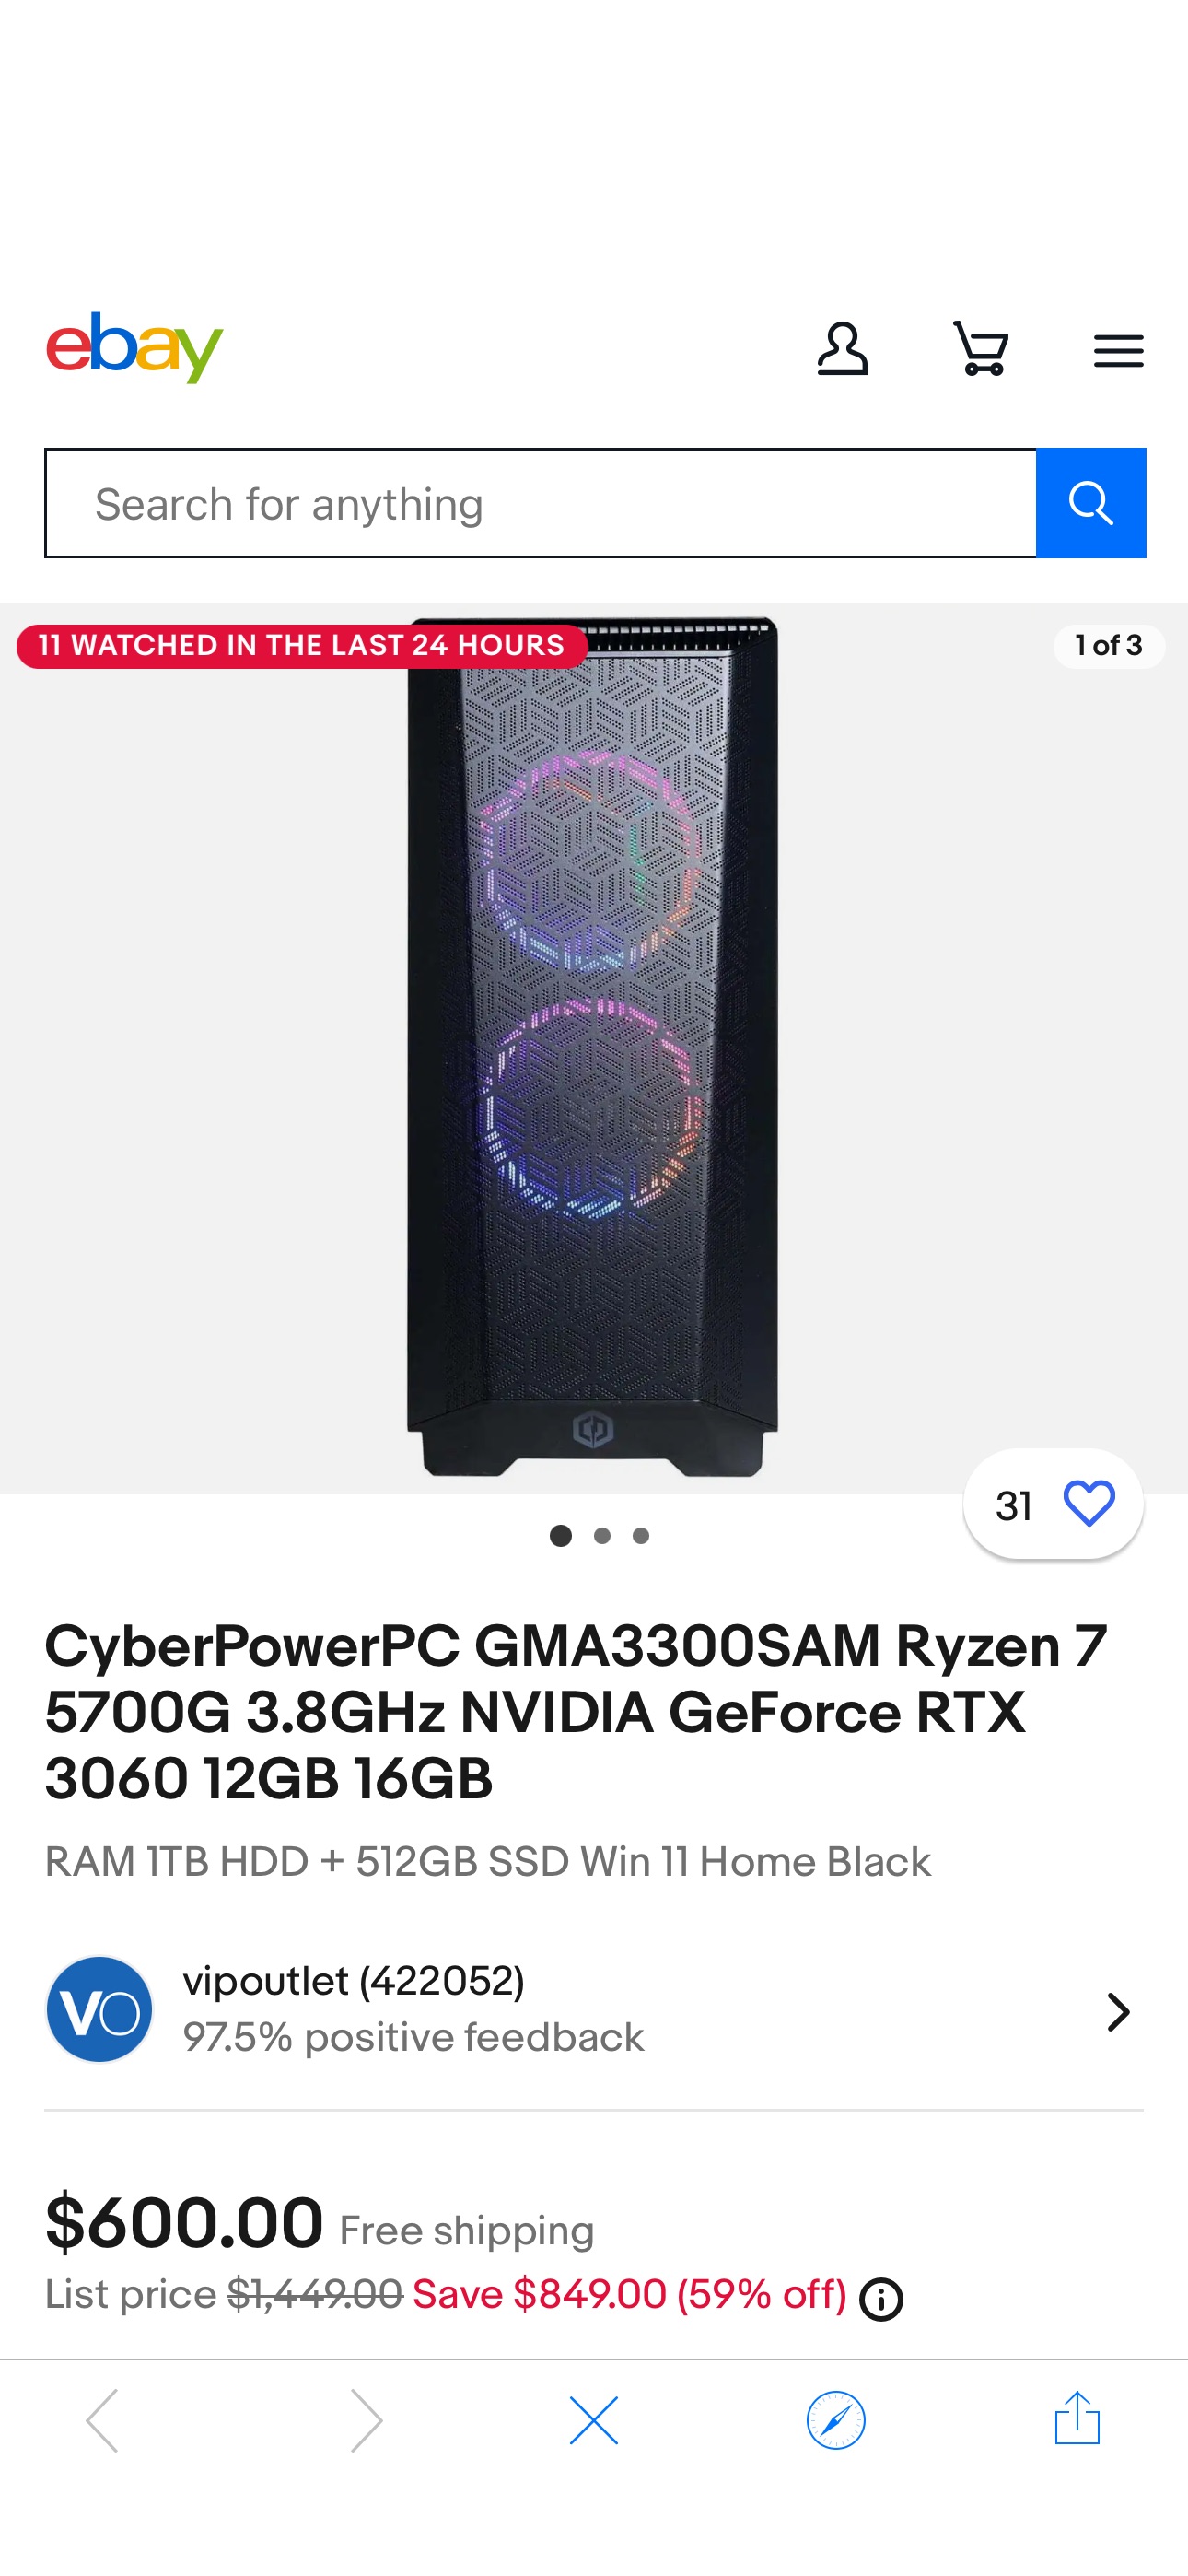 好价3060台式 CyberPowerPC GMA3300SAM Ryzen 7 5700G 3.8GHz NVIDIA GeForce RTX 3060 12GB 16GB | eBay